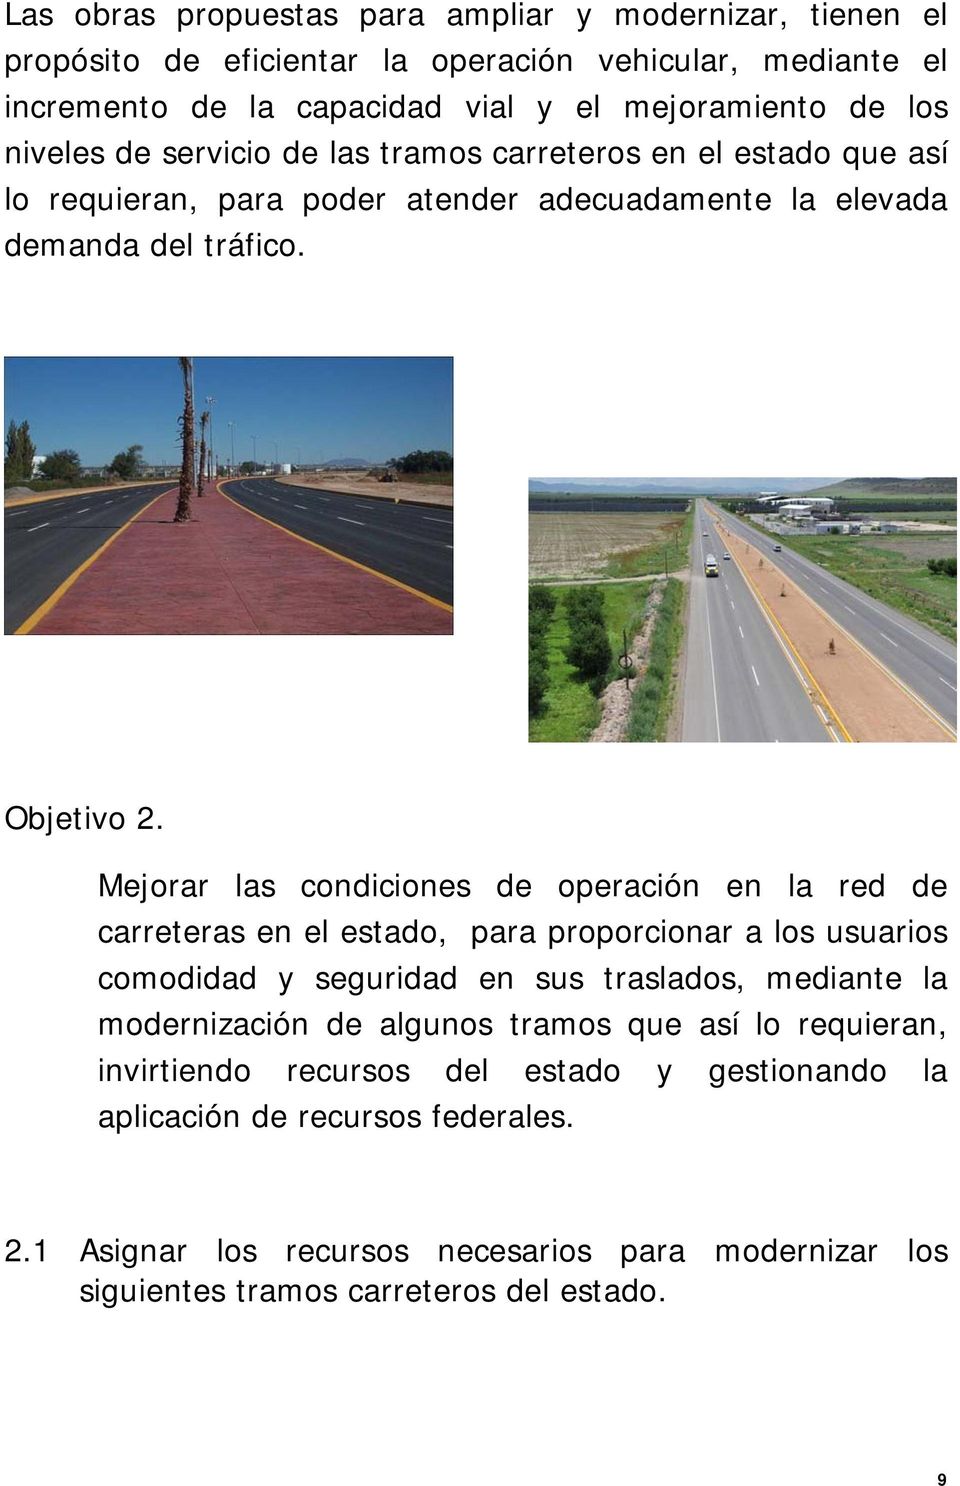 Mejorar las condiciones de operación en la red de carreteras en el estado, para proporcionar a los usuarios comodidad y seguridad en sus traslados, mediante la modernización de